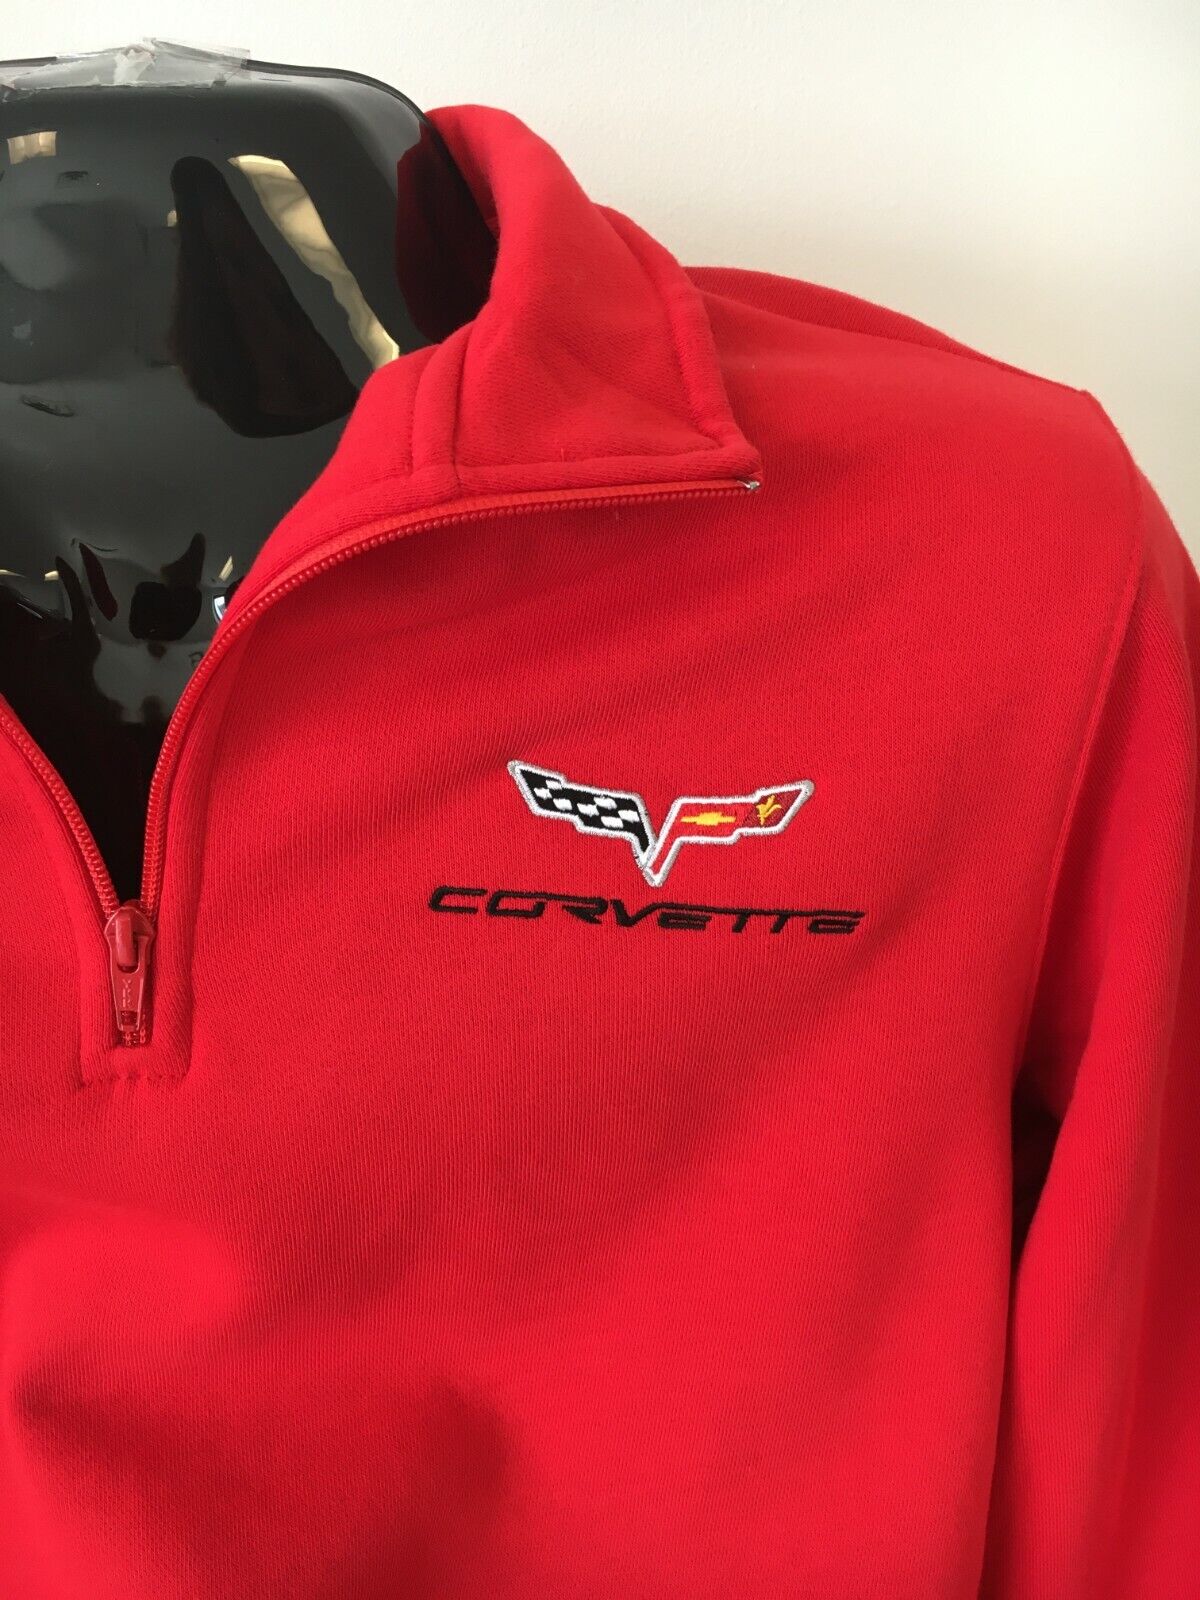 C6 Corvette Quarter Zip Pullover Sweatshirt Men's Black, Gray and Red